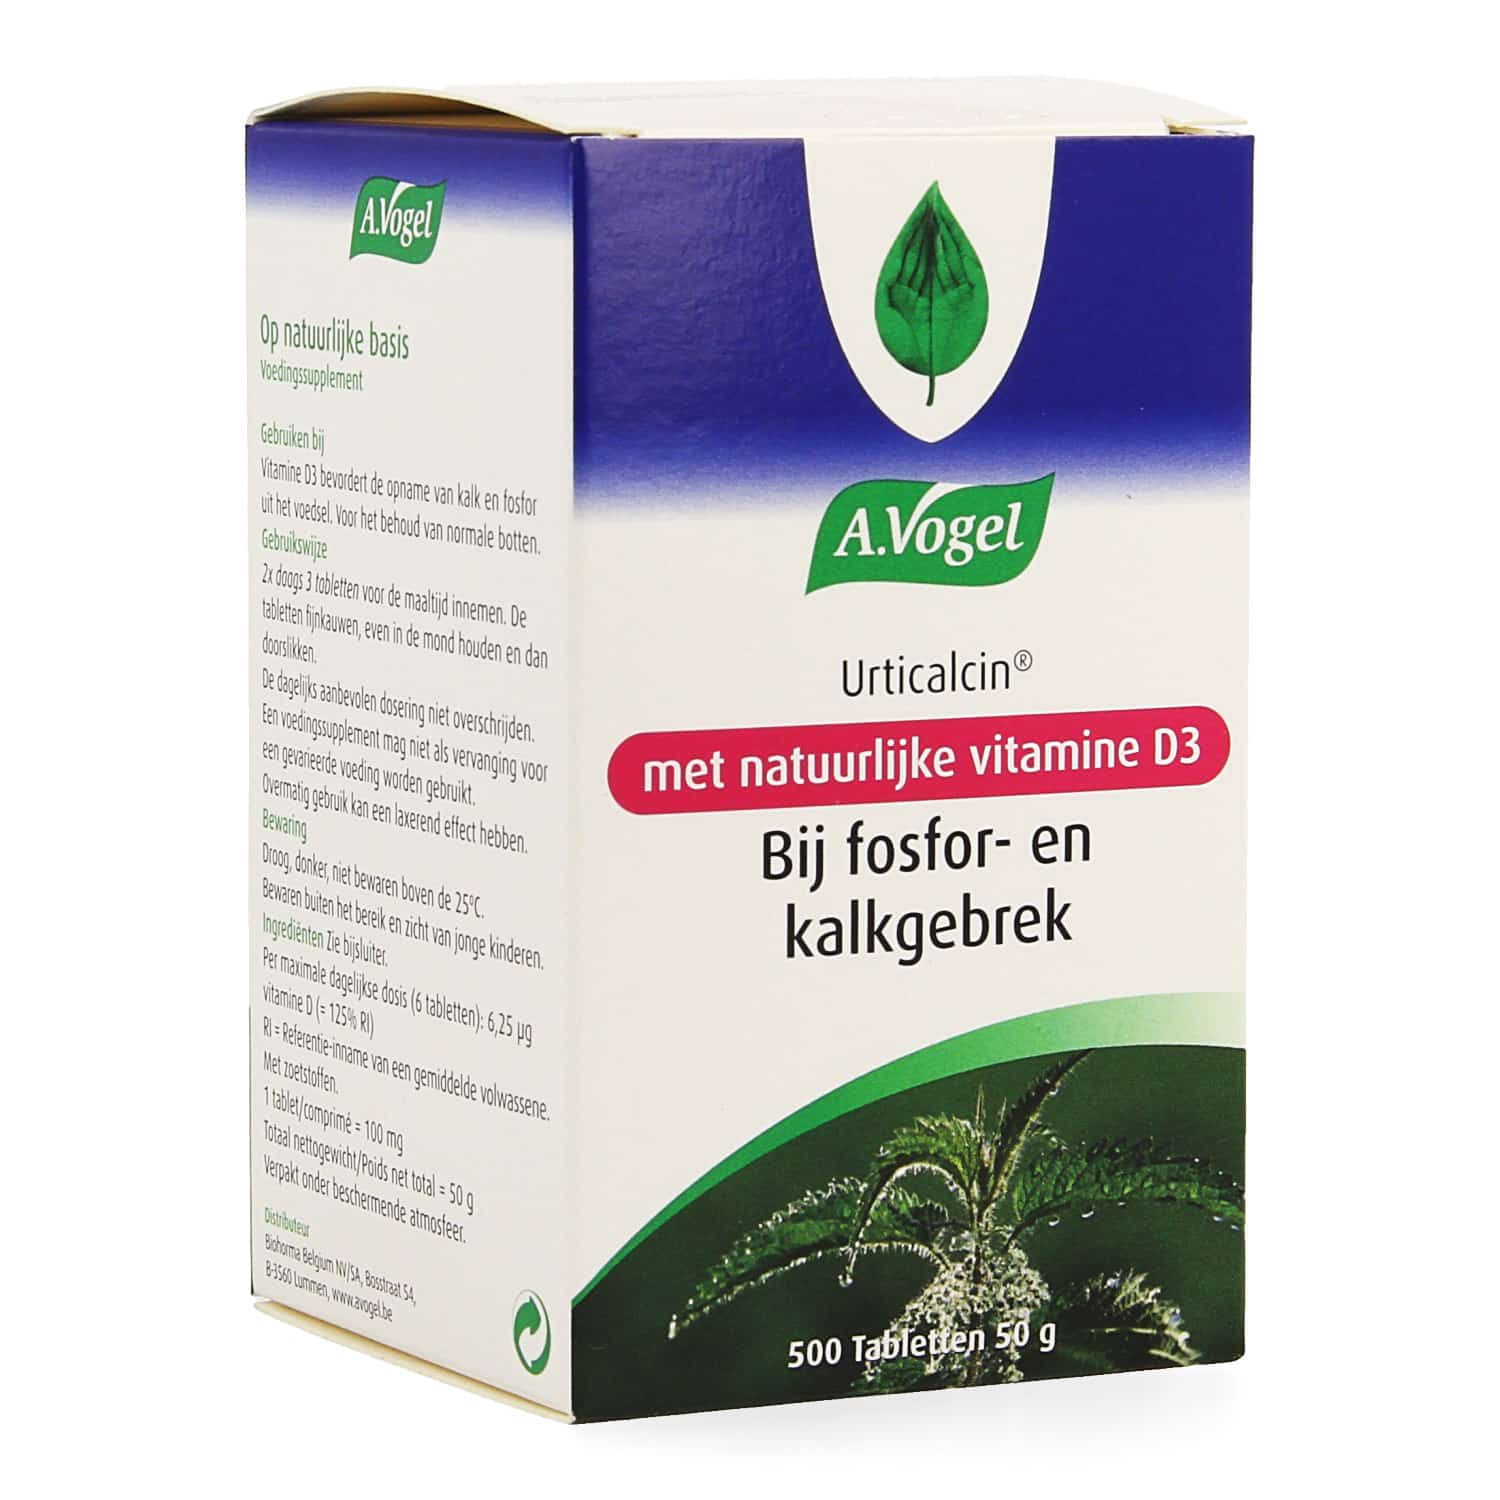 A. Vogel Urticalcin + Vitamine D